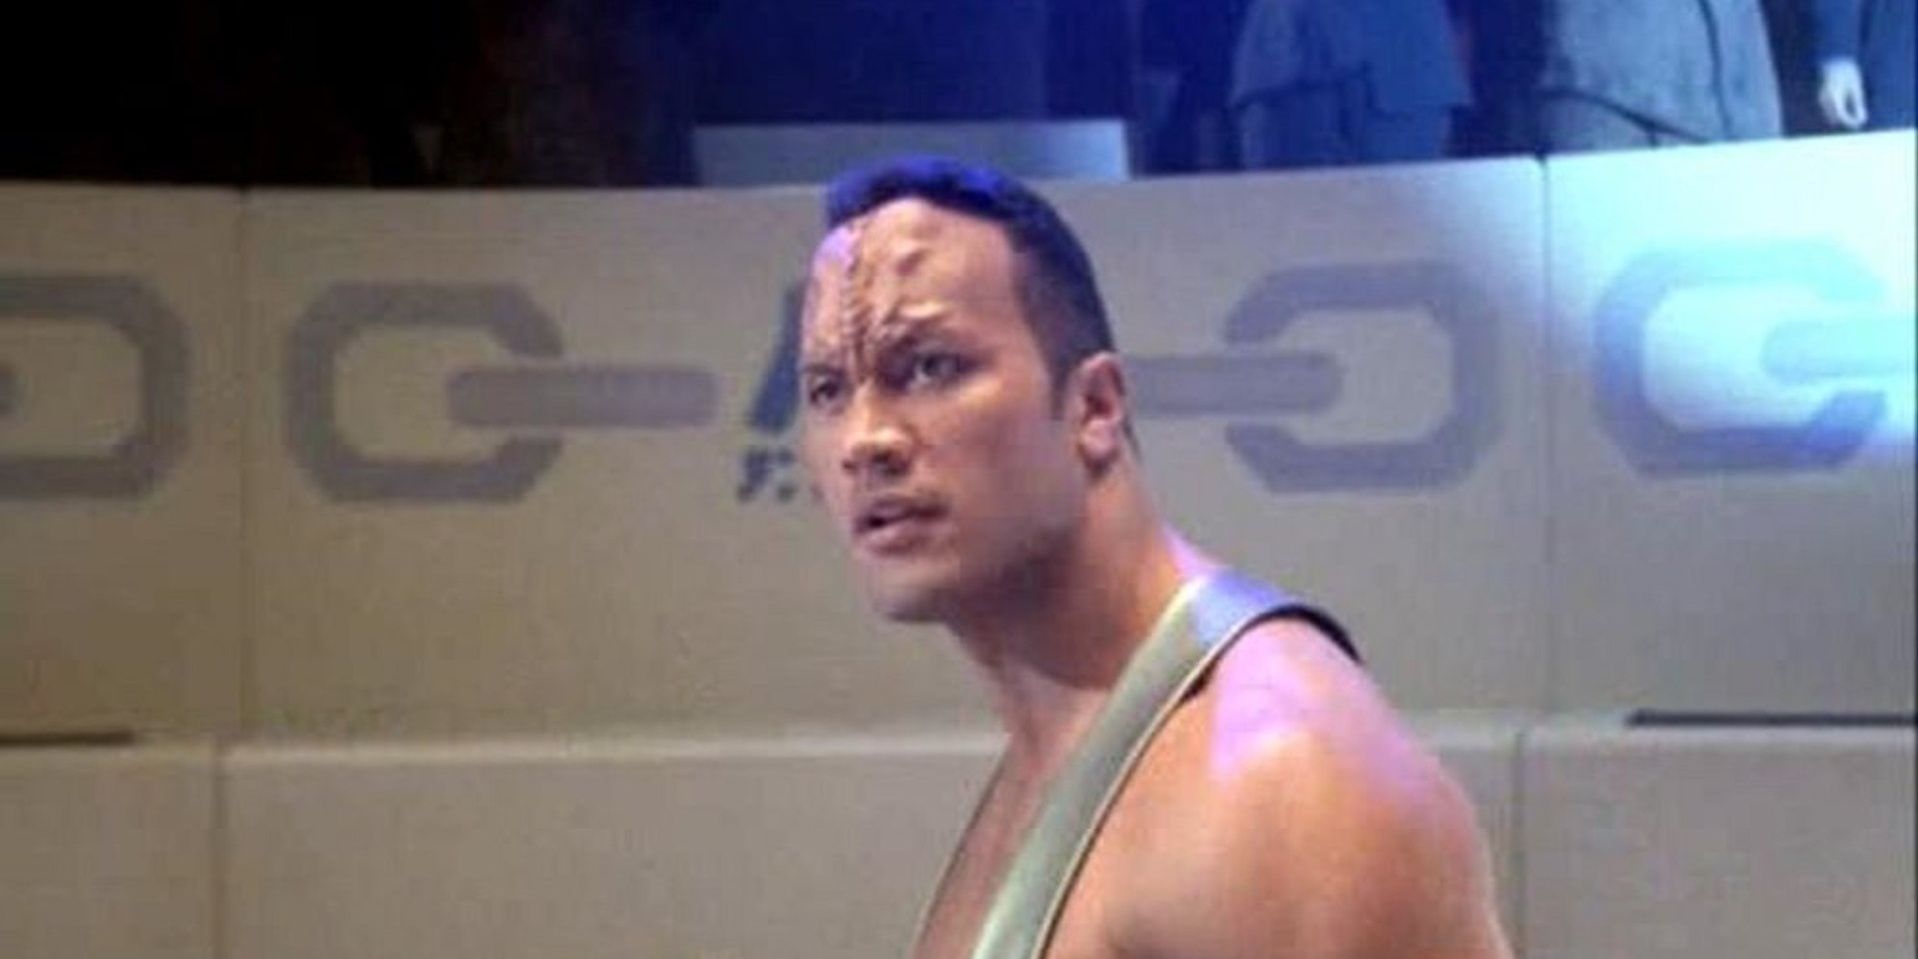 Dwayne Johnson in Star Trek